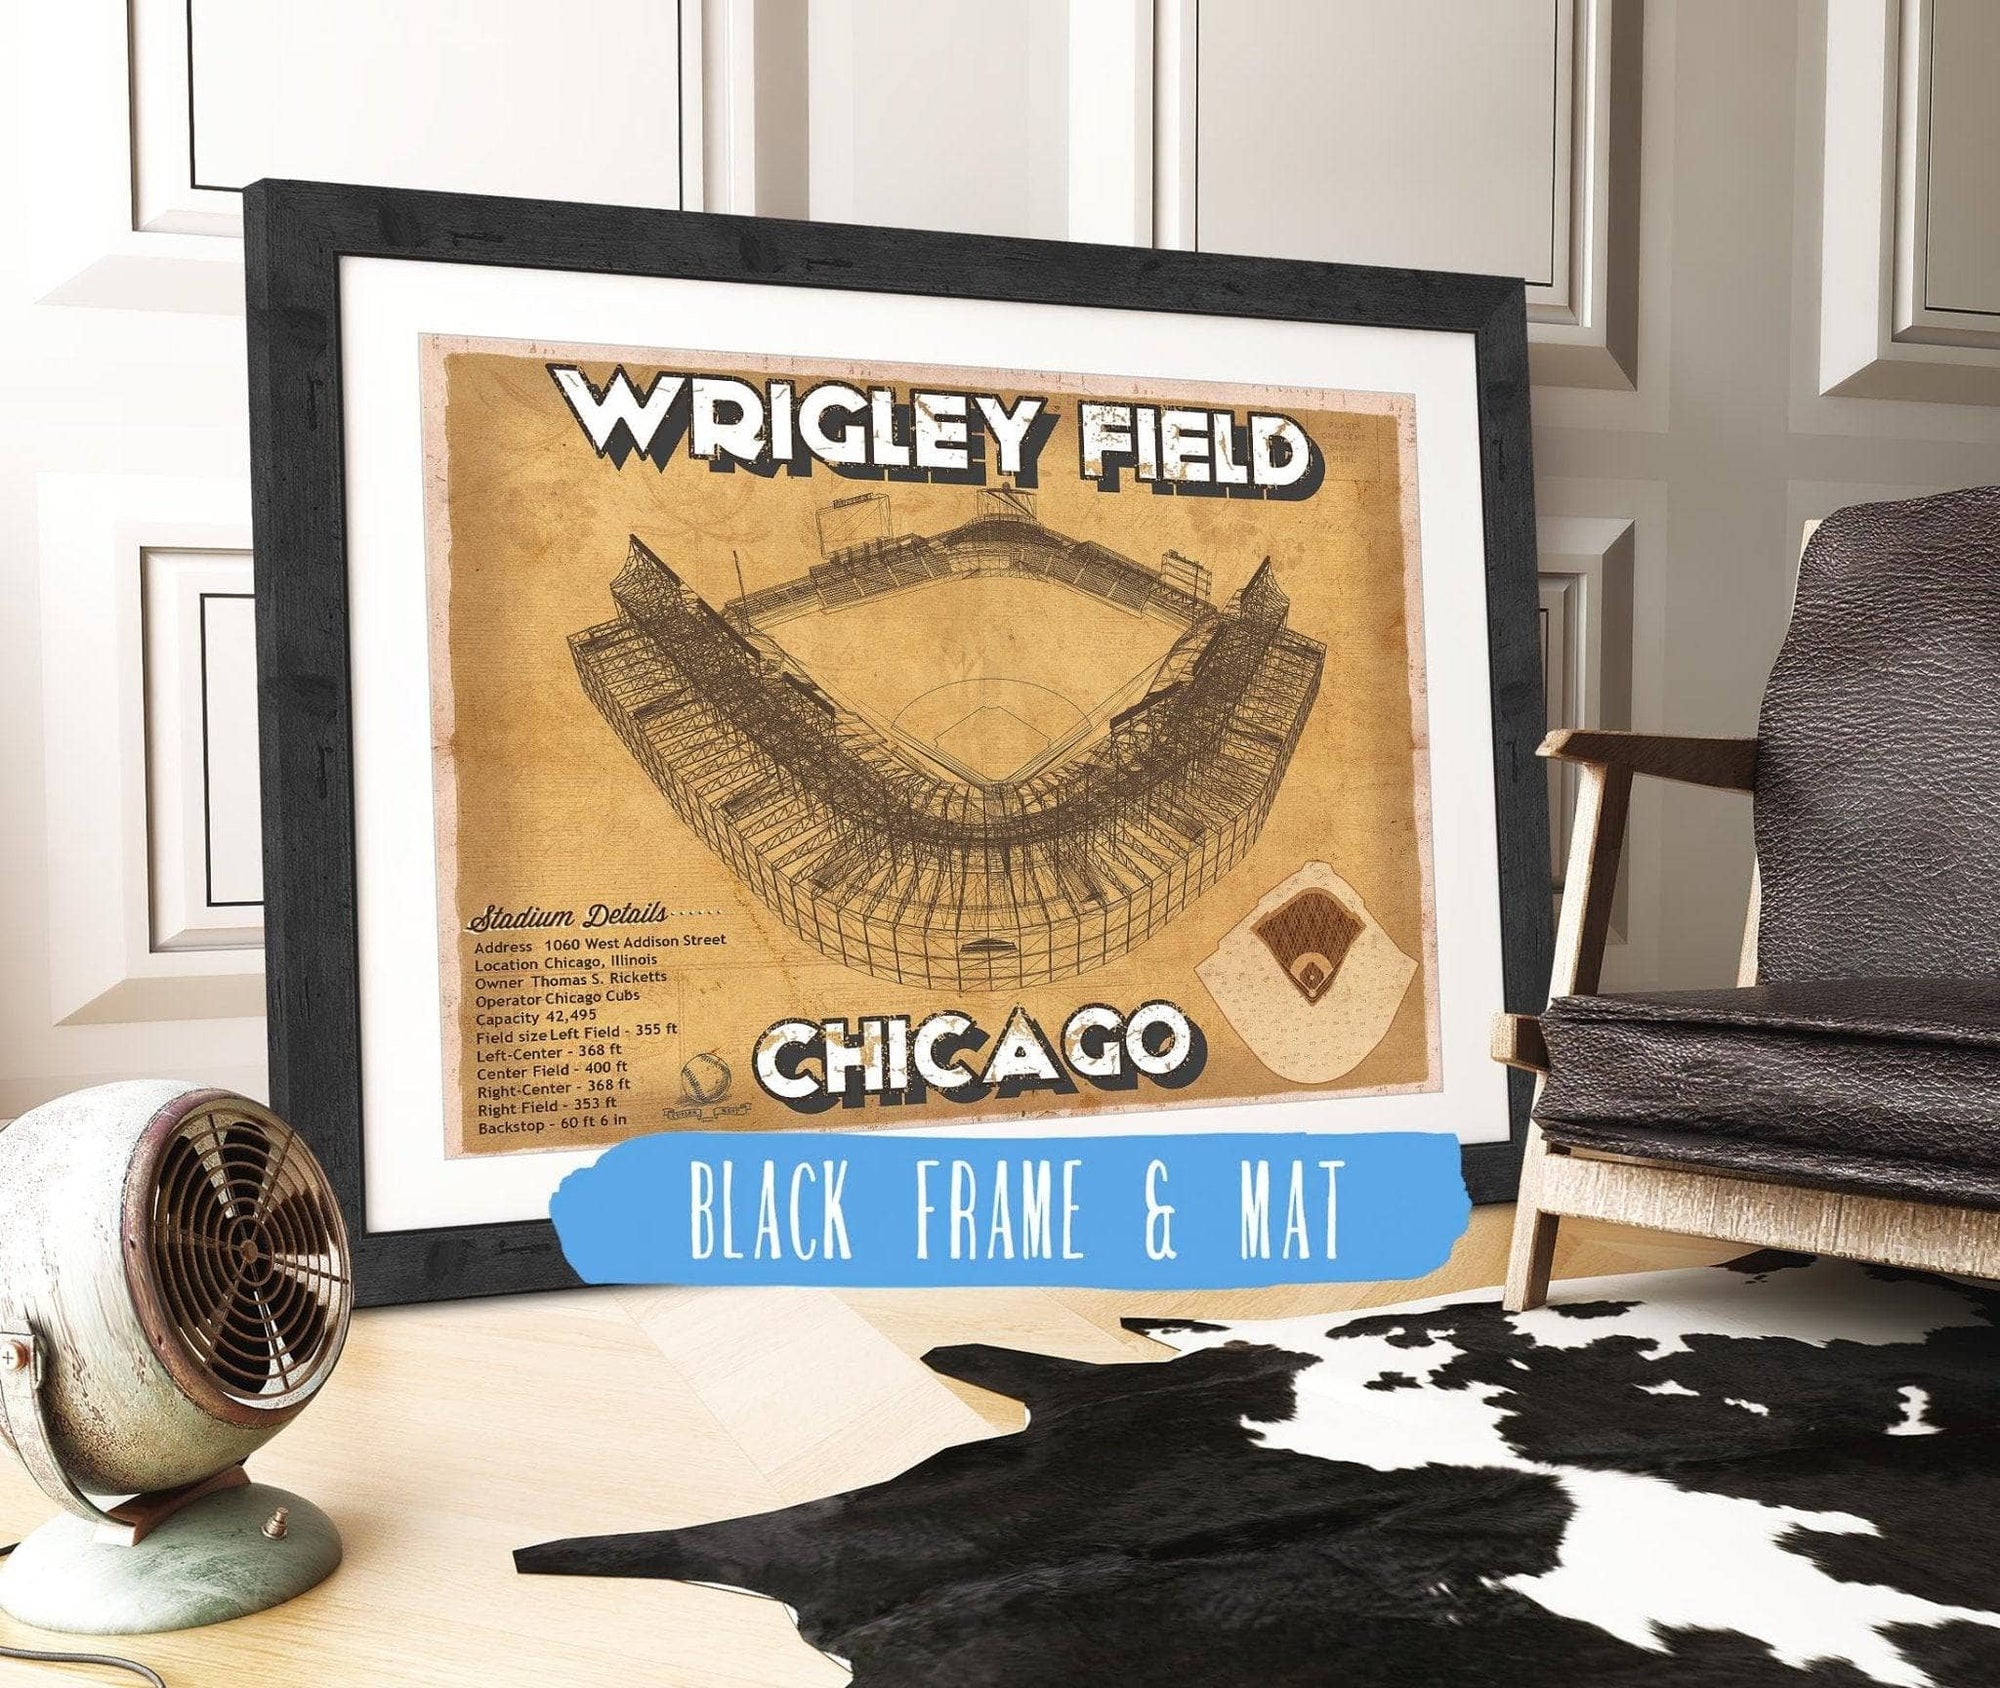 Cutler West 14" x 11" / Black Frame & Mat Wrigley Field Print - Chicago Cubs Baseball Print 703108870-14"-x-11"6795